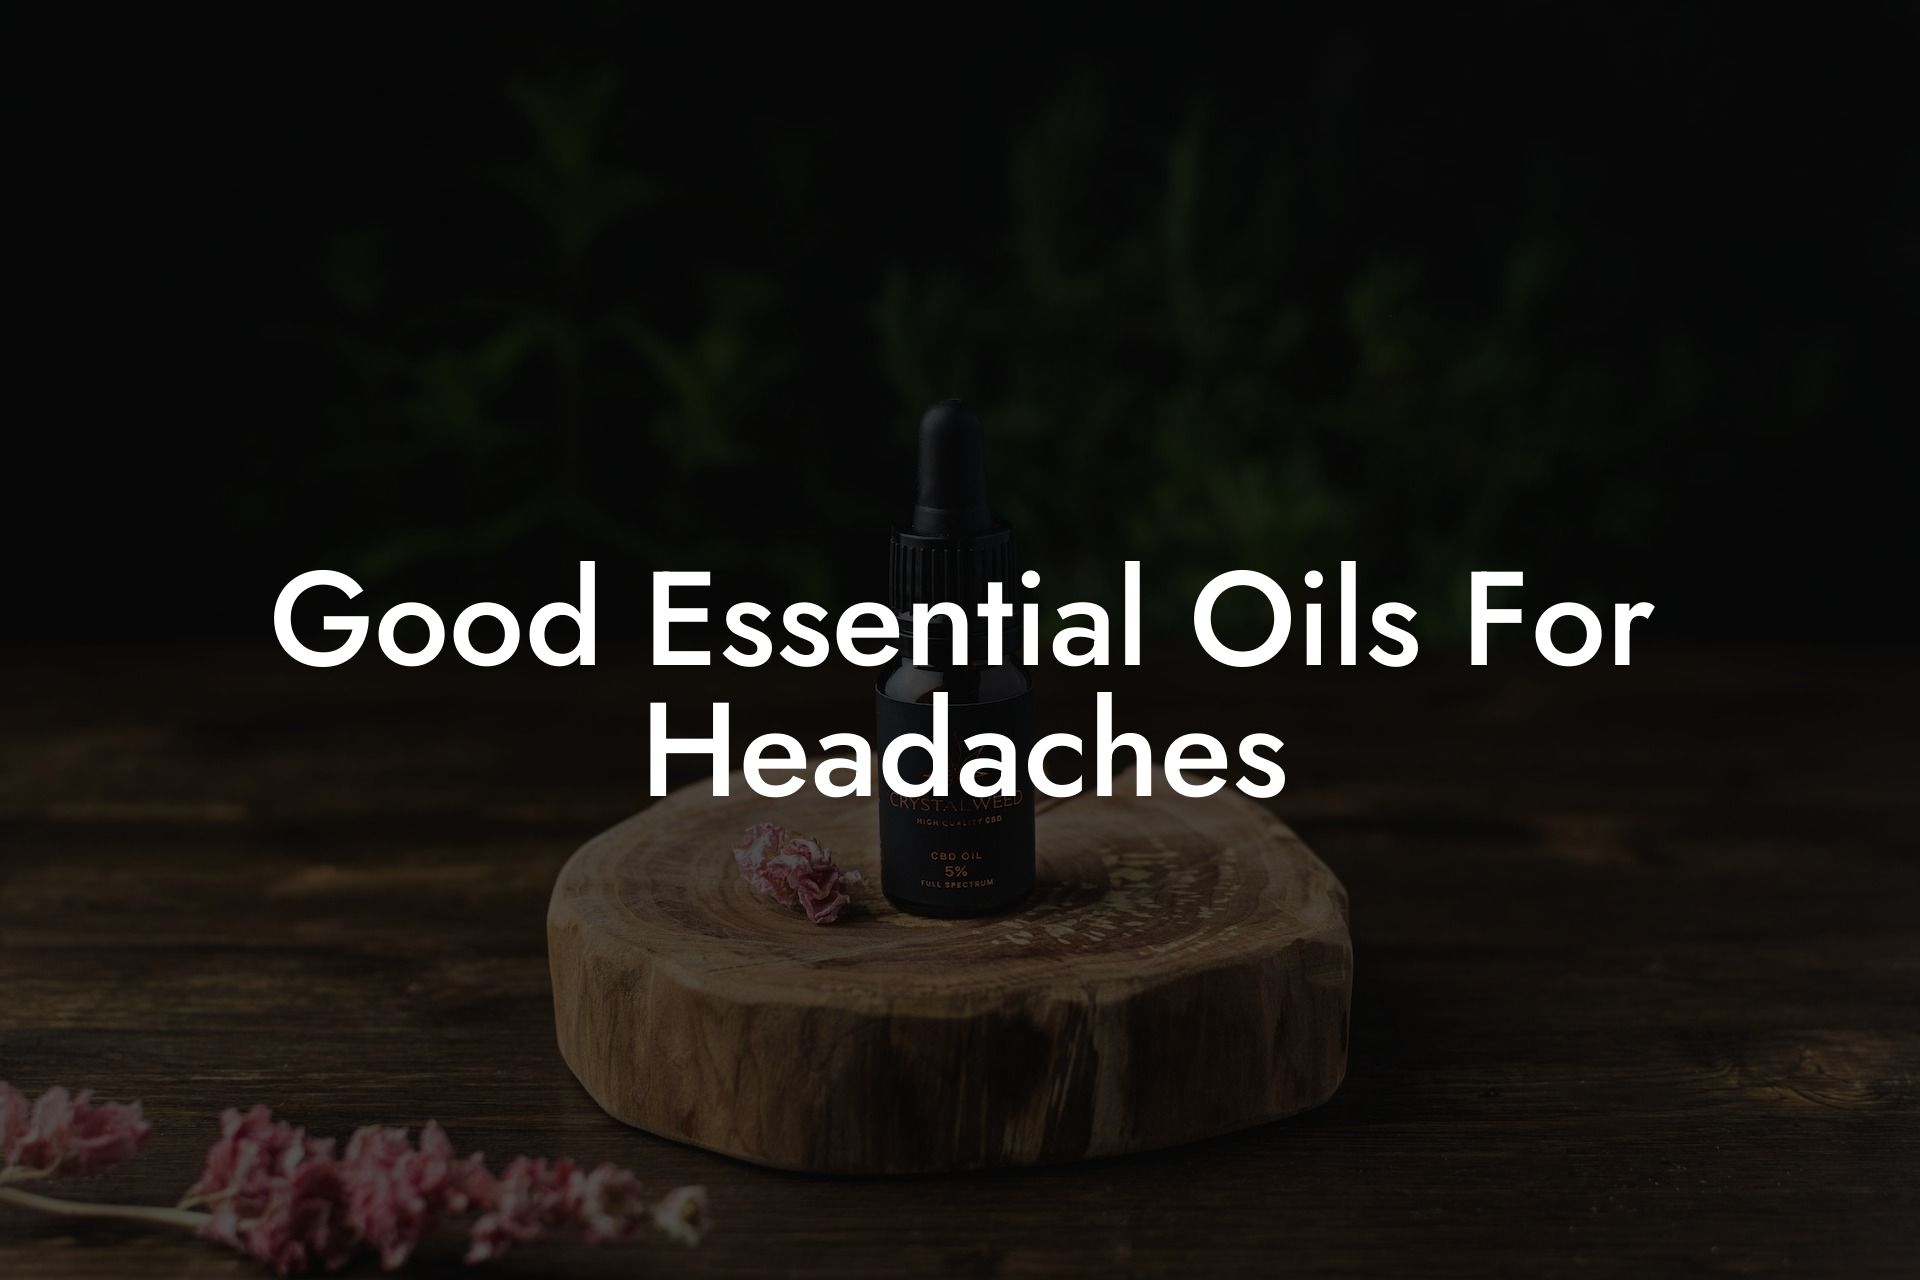 Good Essential Oils For Headaches